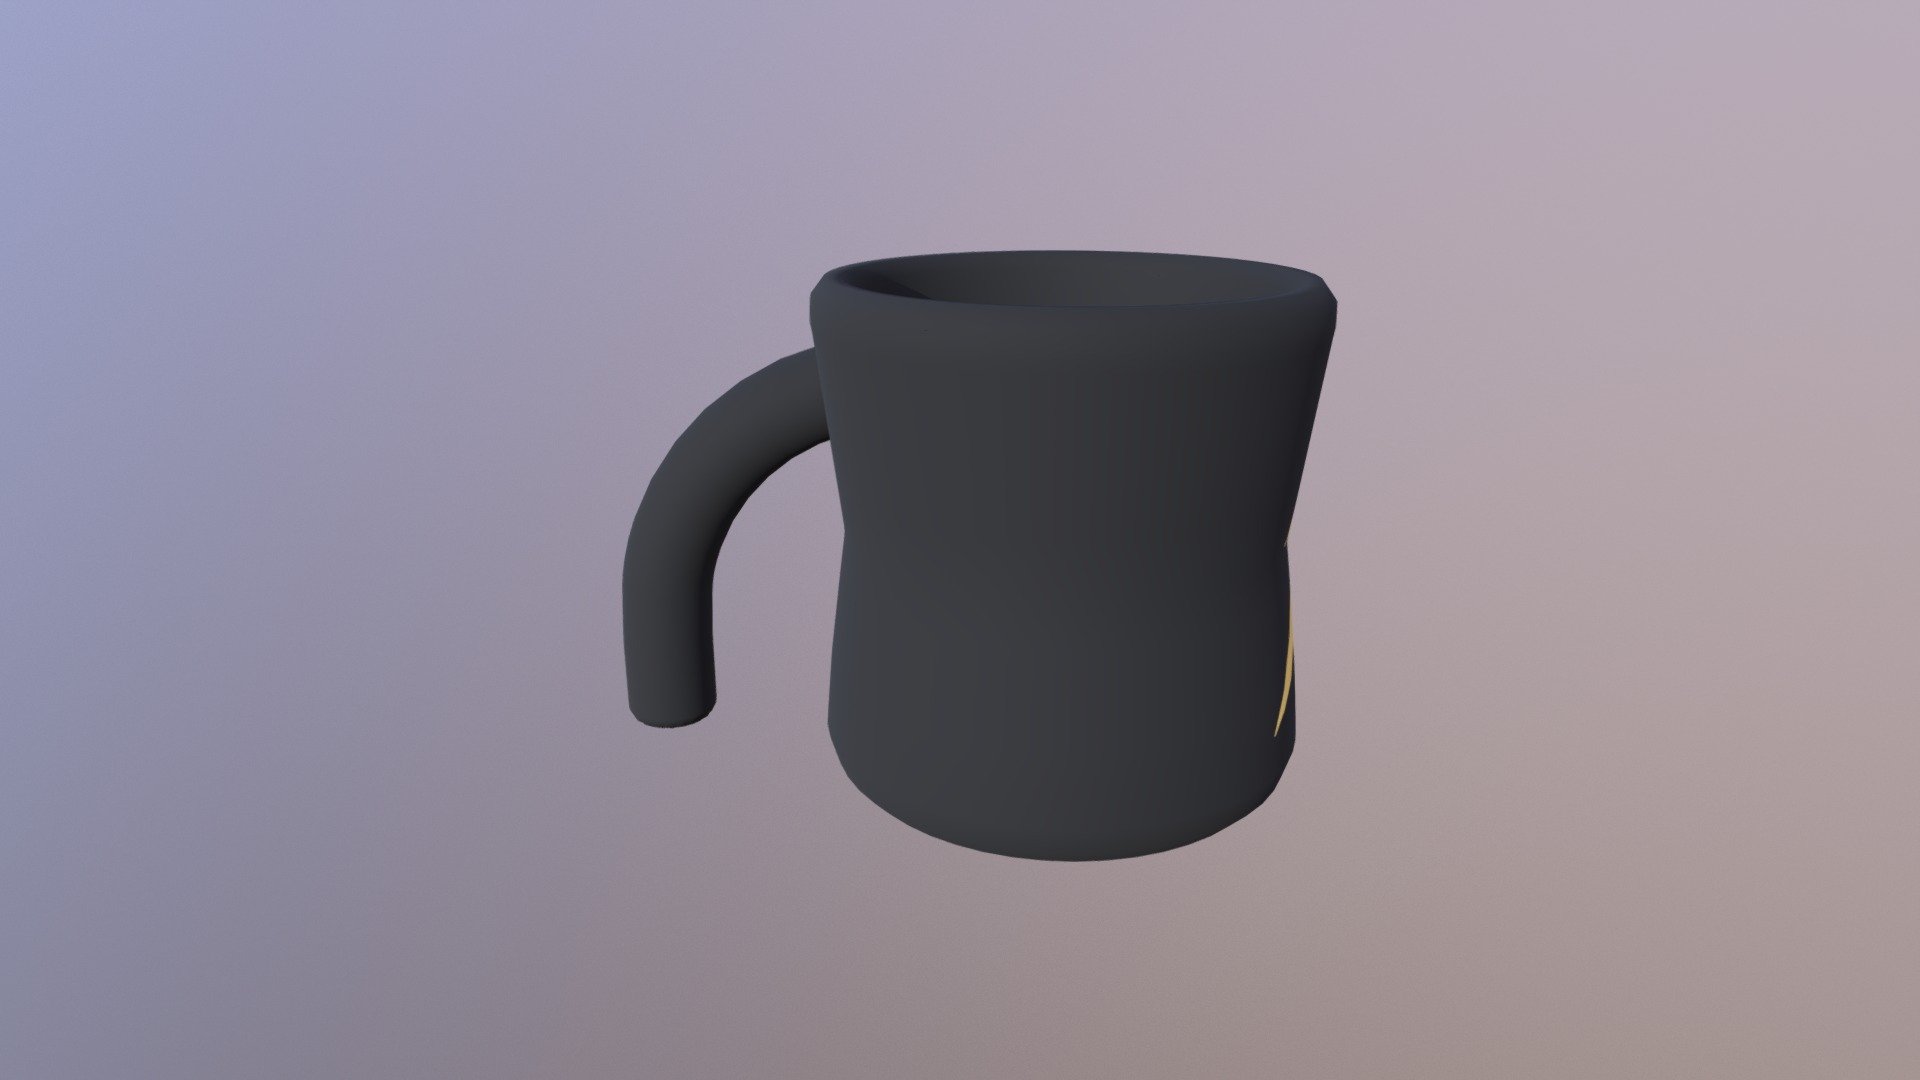 Coffee Mug Logo